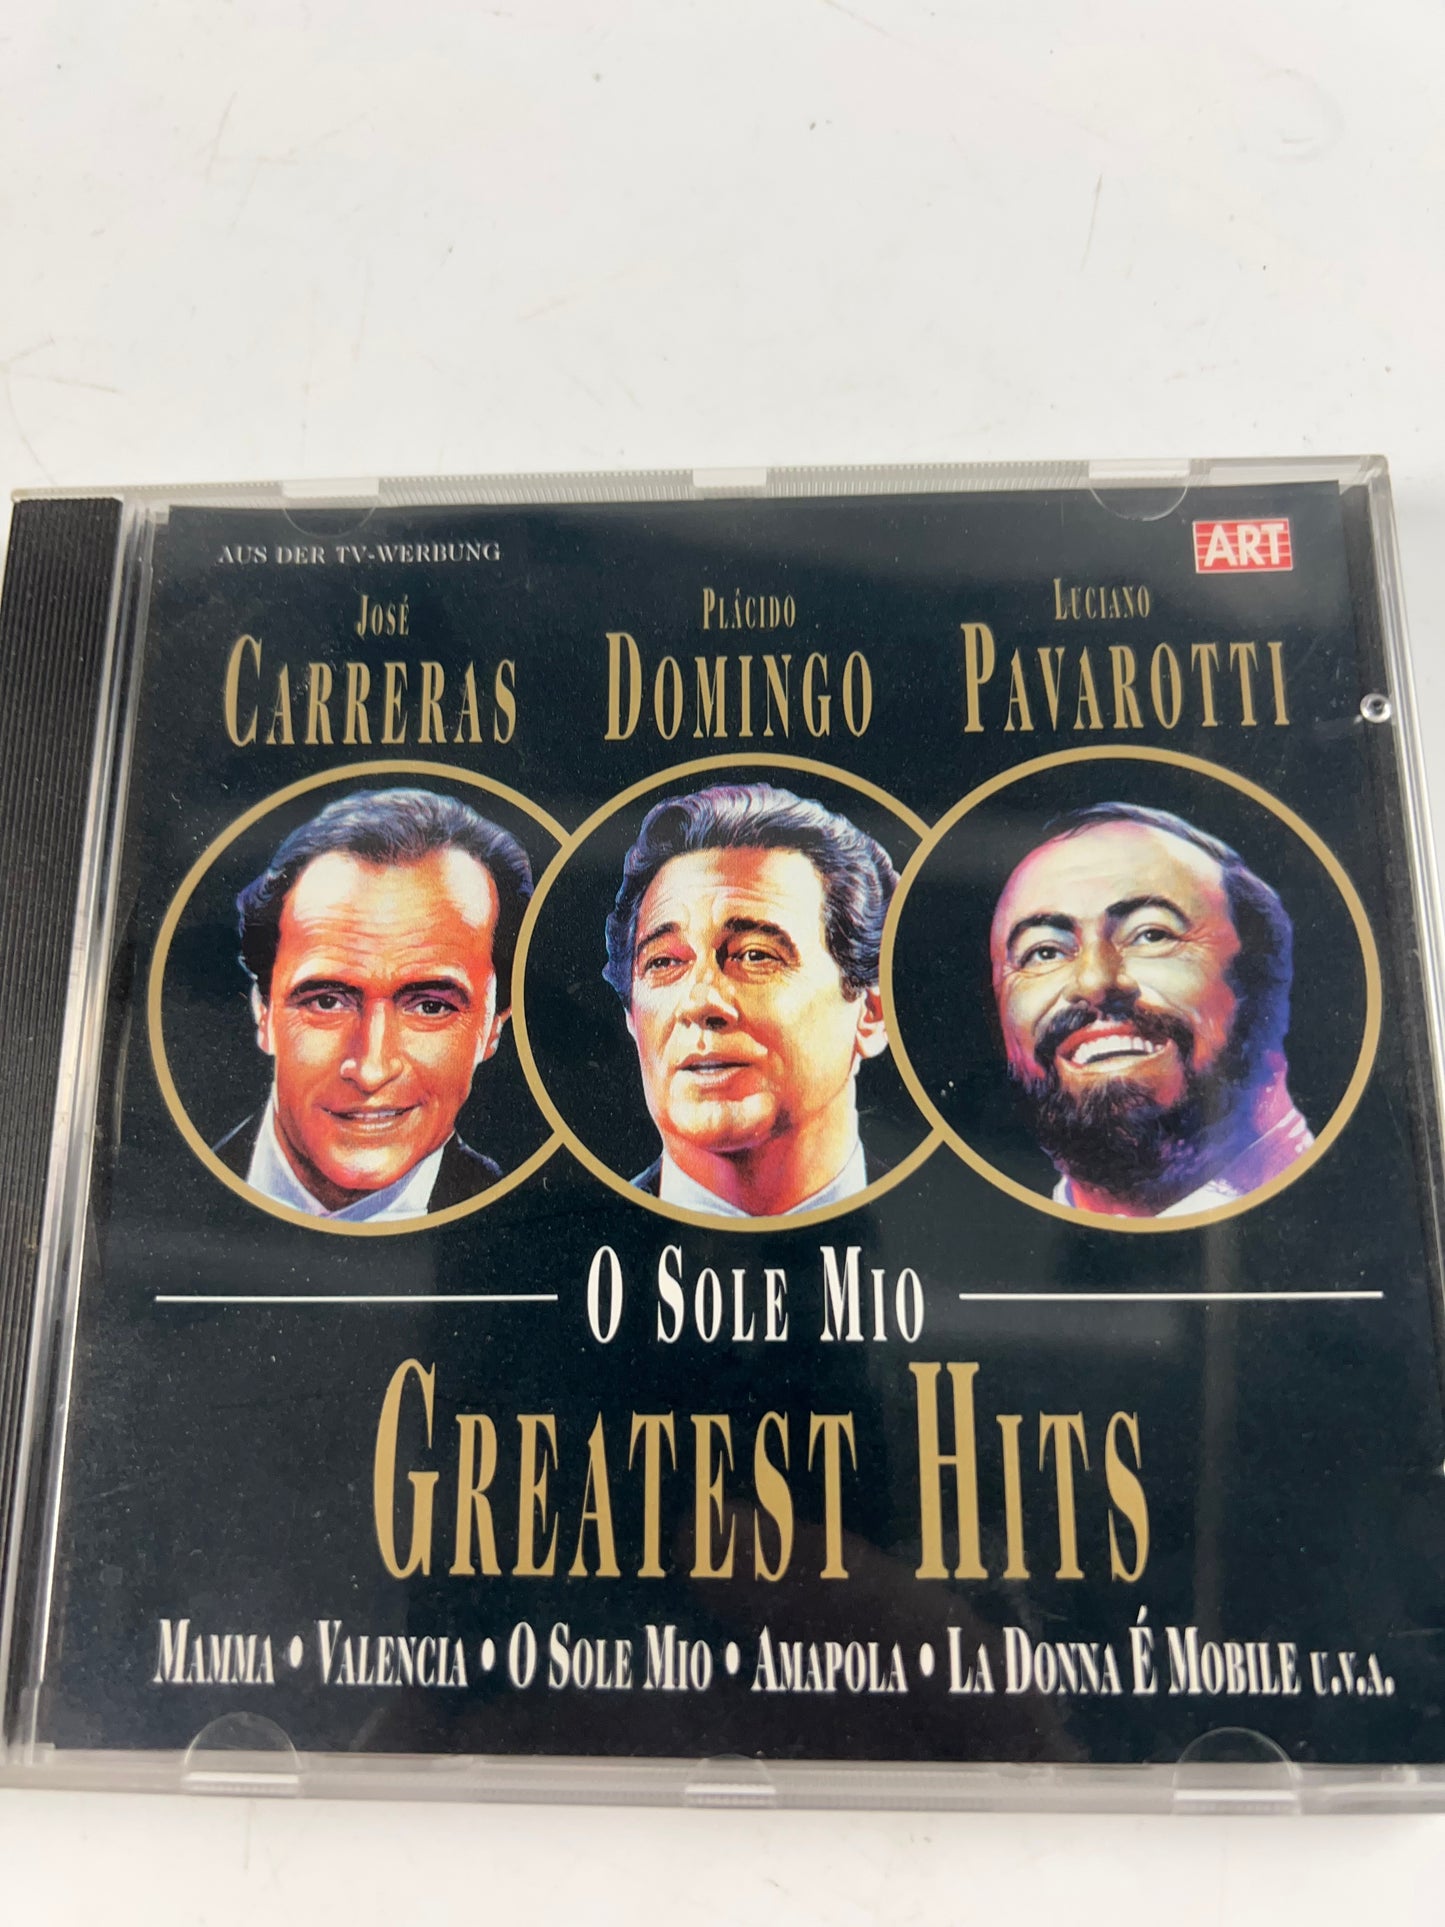 Carreras Domingo Pavarotti - CD - O sole mio-Greatest hits (1994, Edel)